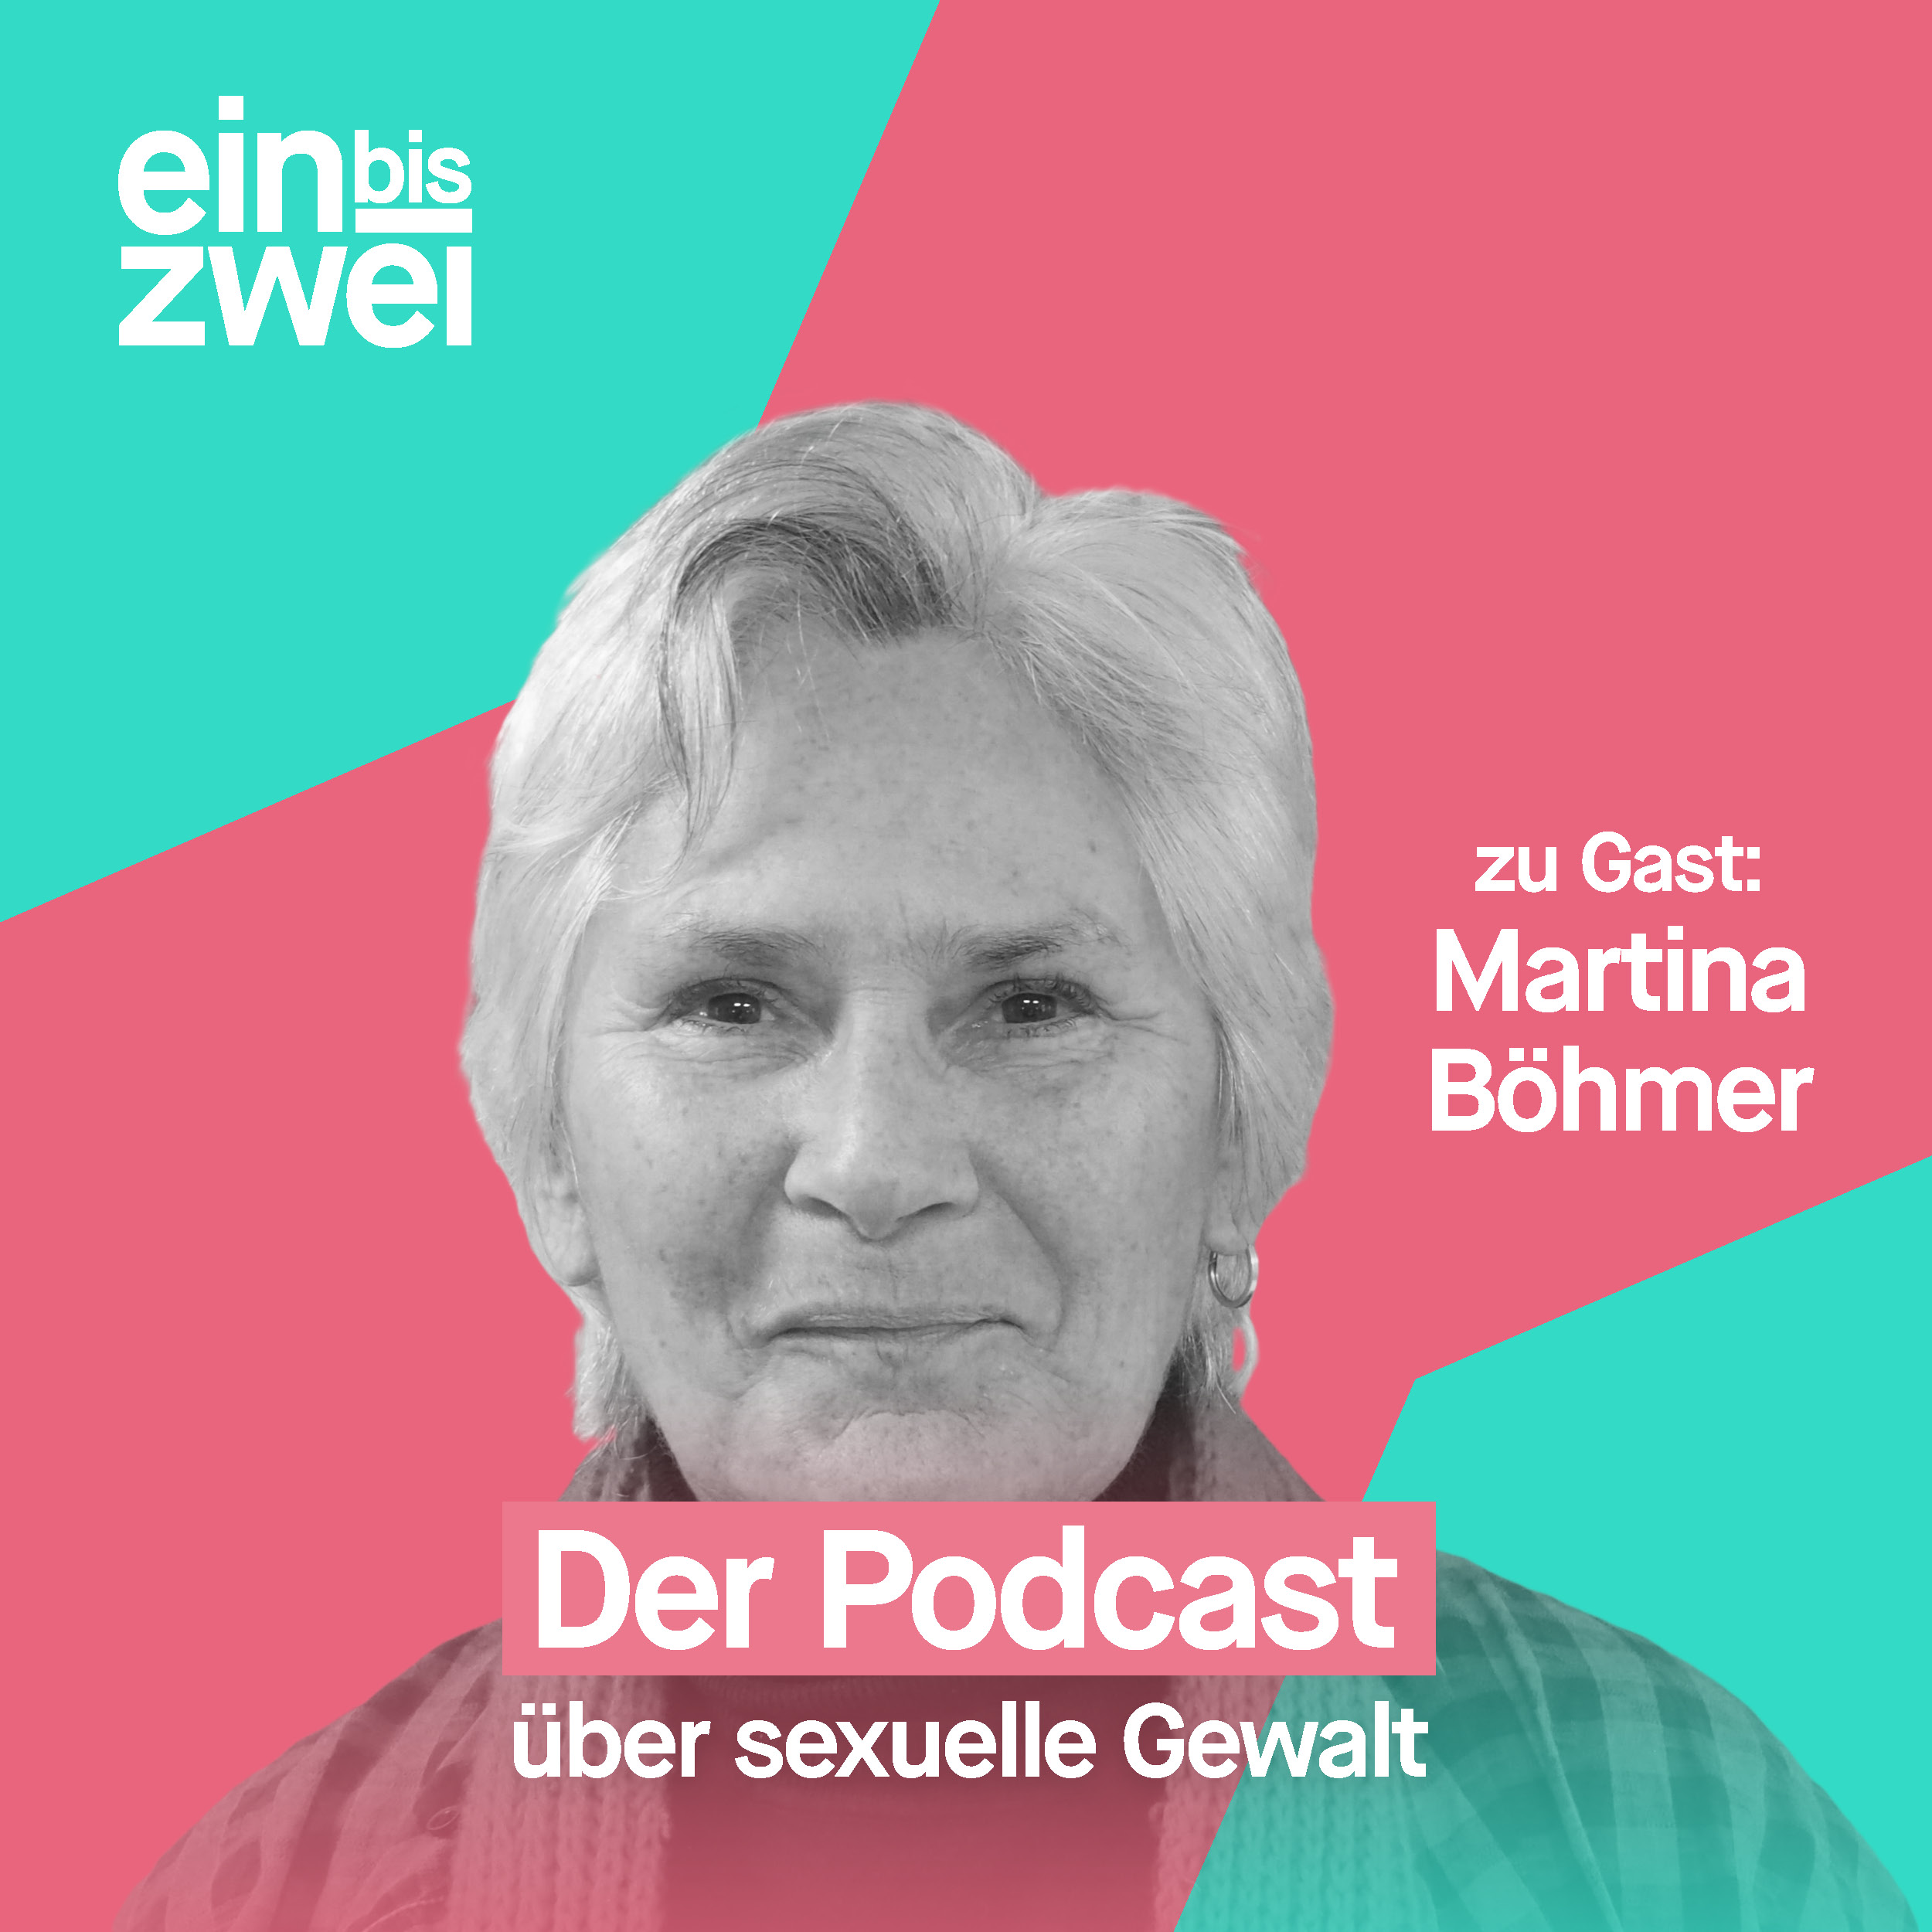 Martina Böhmer